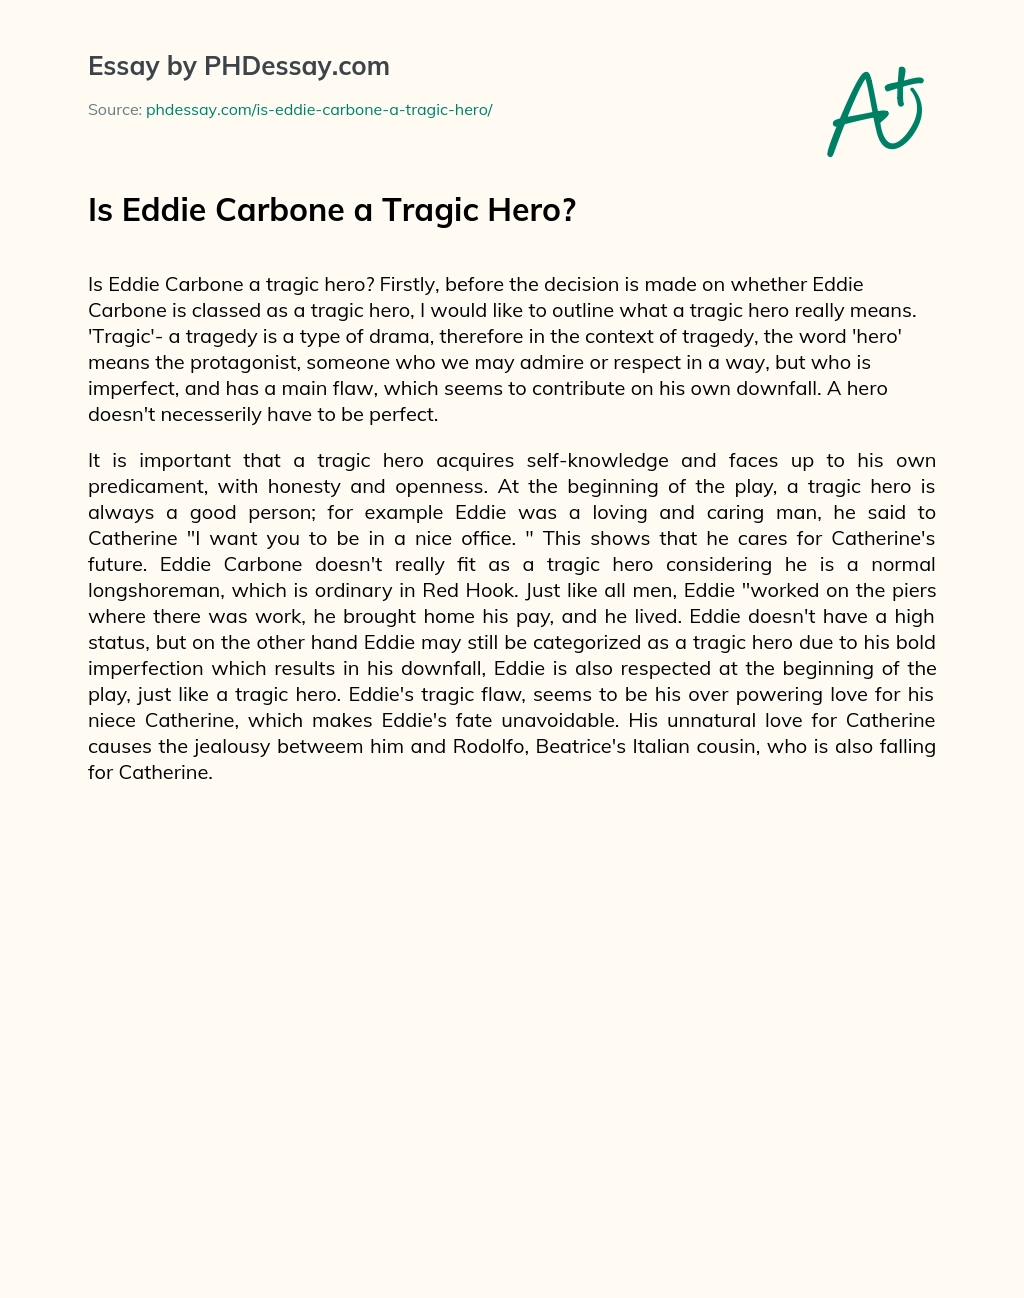 Is Eddie Carbone a Tragic Hero? essay